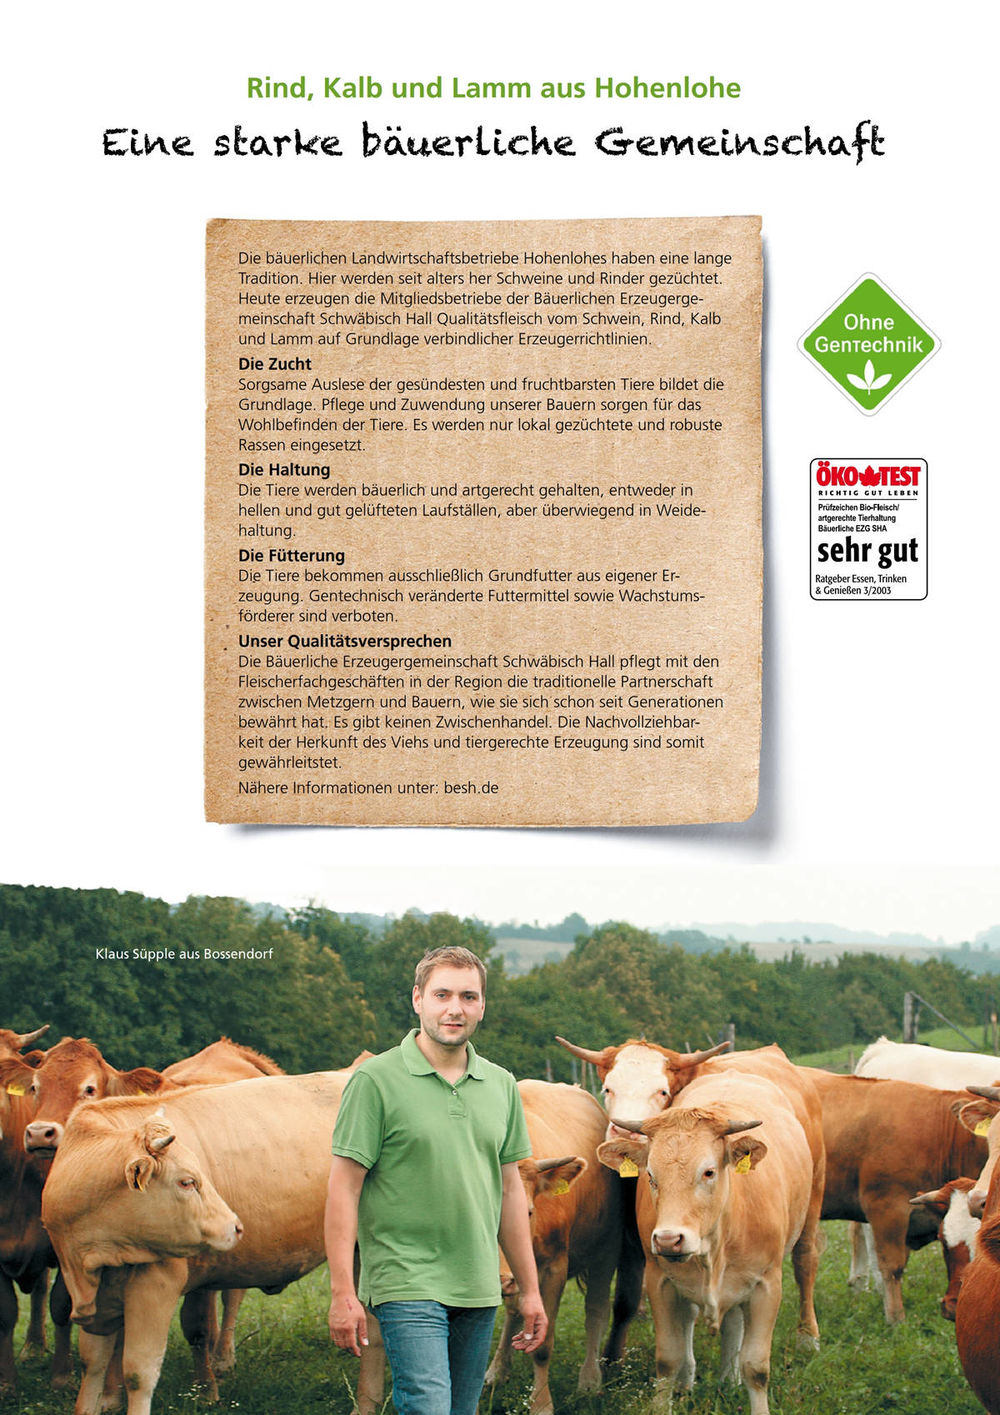 Die bäuerlichen Landwirtschaftsbetriebe Hohenlohes haben eine lange Tradition. Hier werden seit alters her Schweine und Rinder gezüchtet. Heute erzeugen die Mitgliedsbetriebe der Bäuerlichen Erzeugergemeinschaft Schwäbisch Hall Qualitätsfleisch